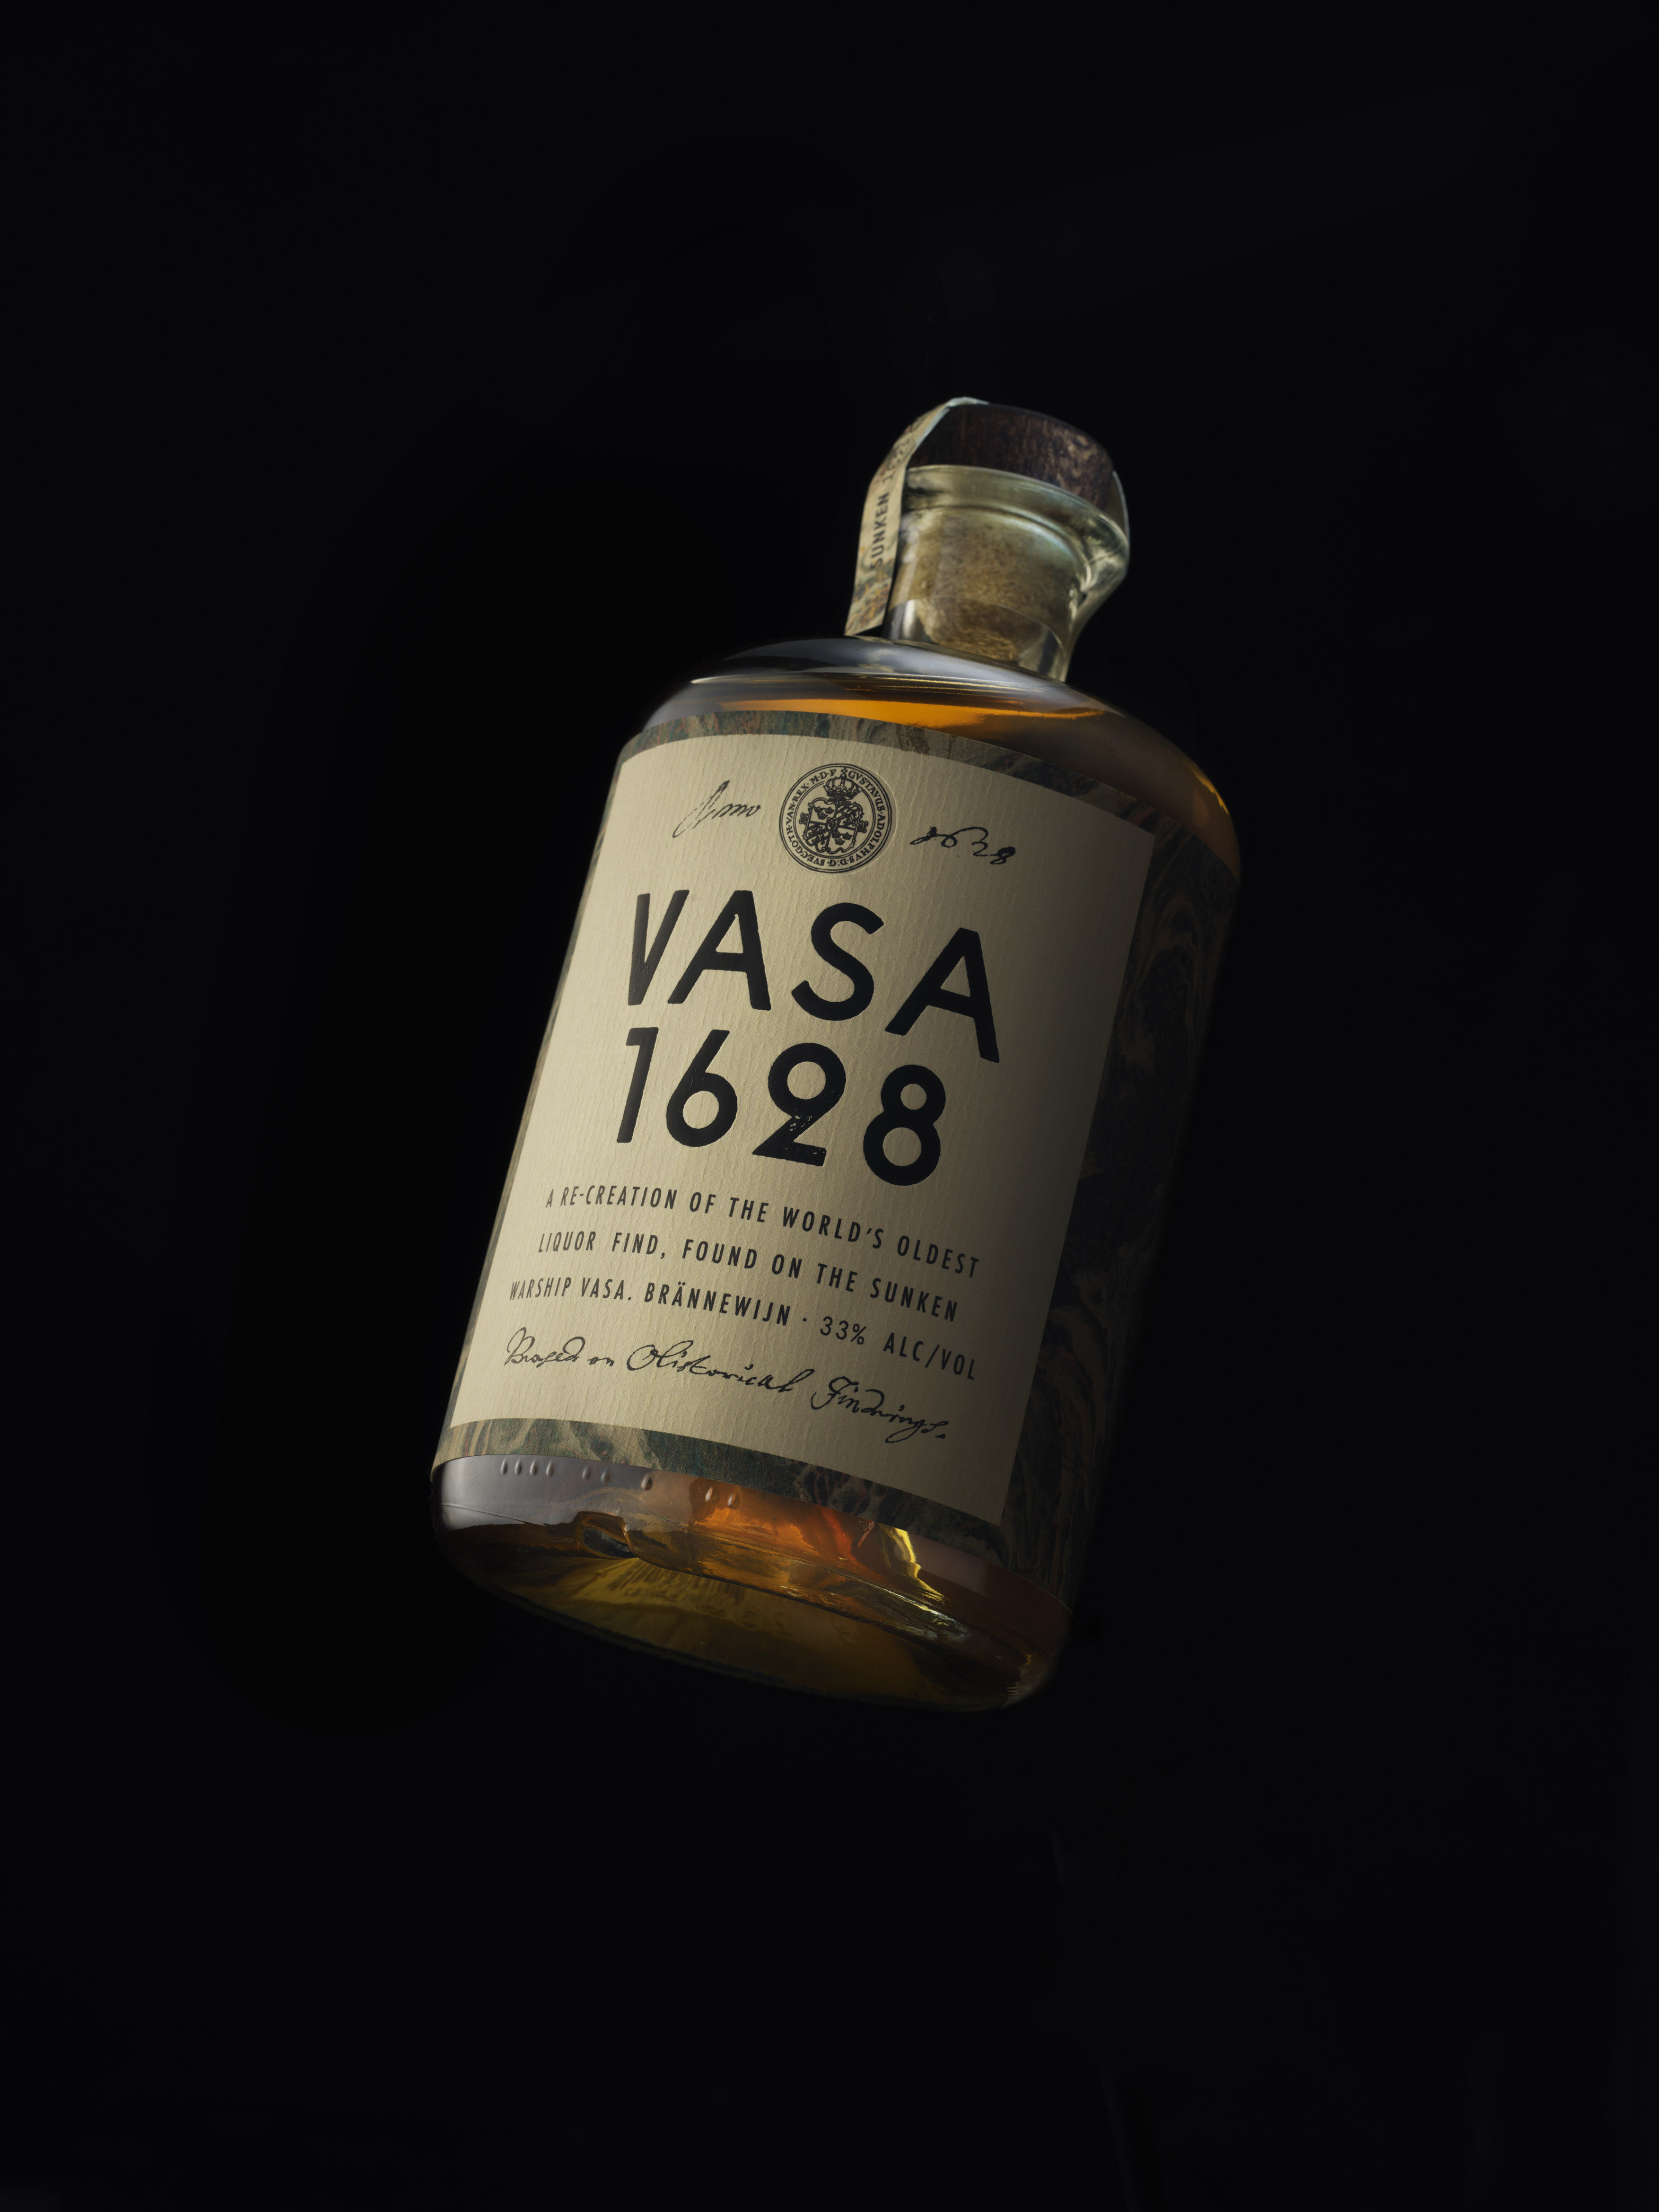 Zobacz temat - Vasa 1628 by Marek